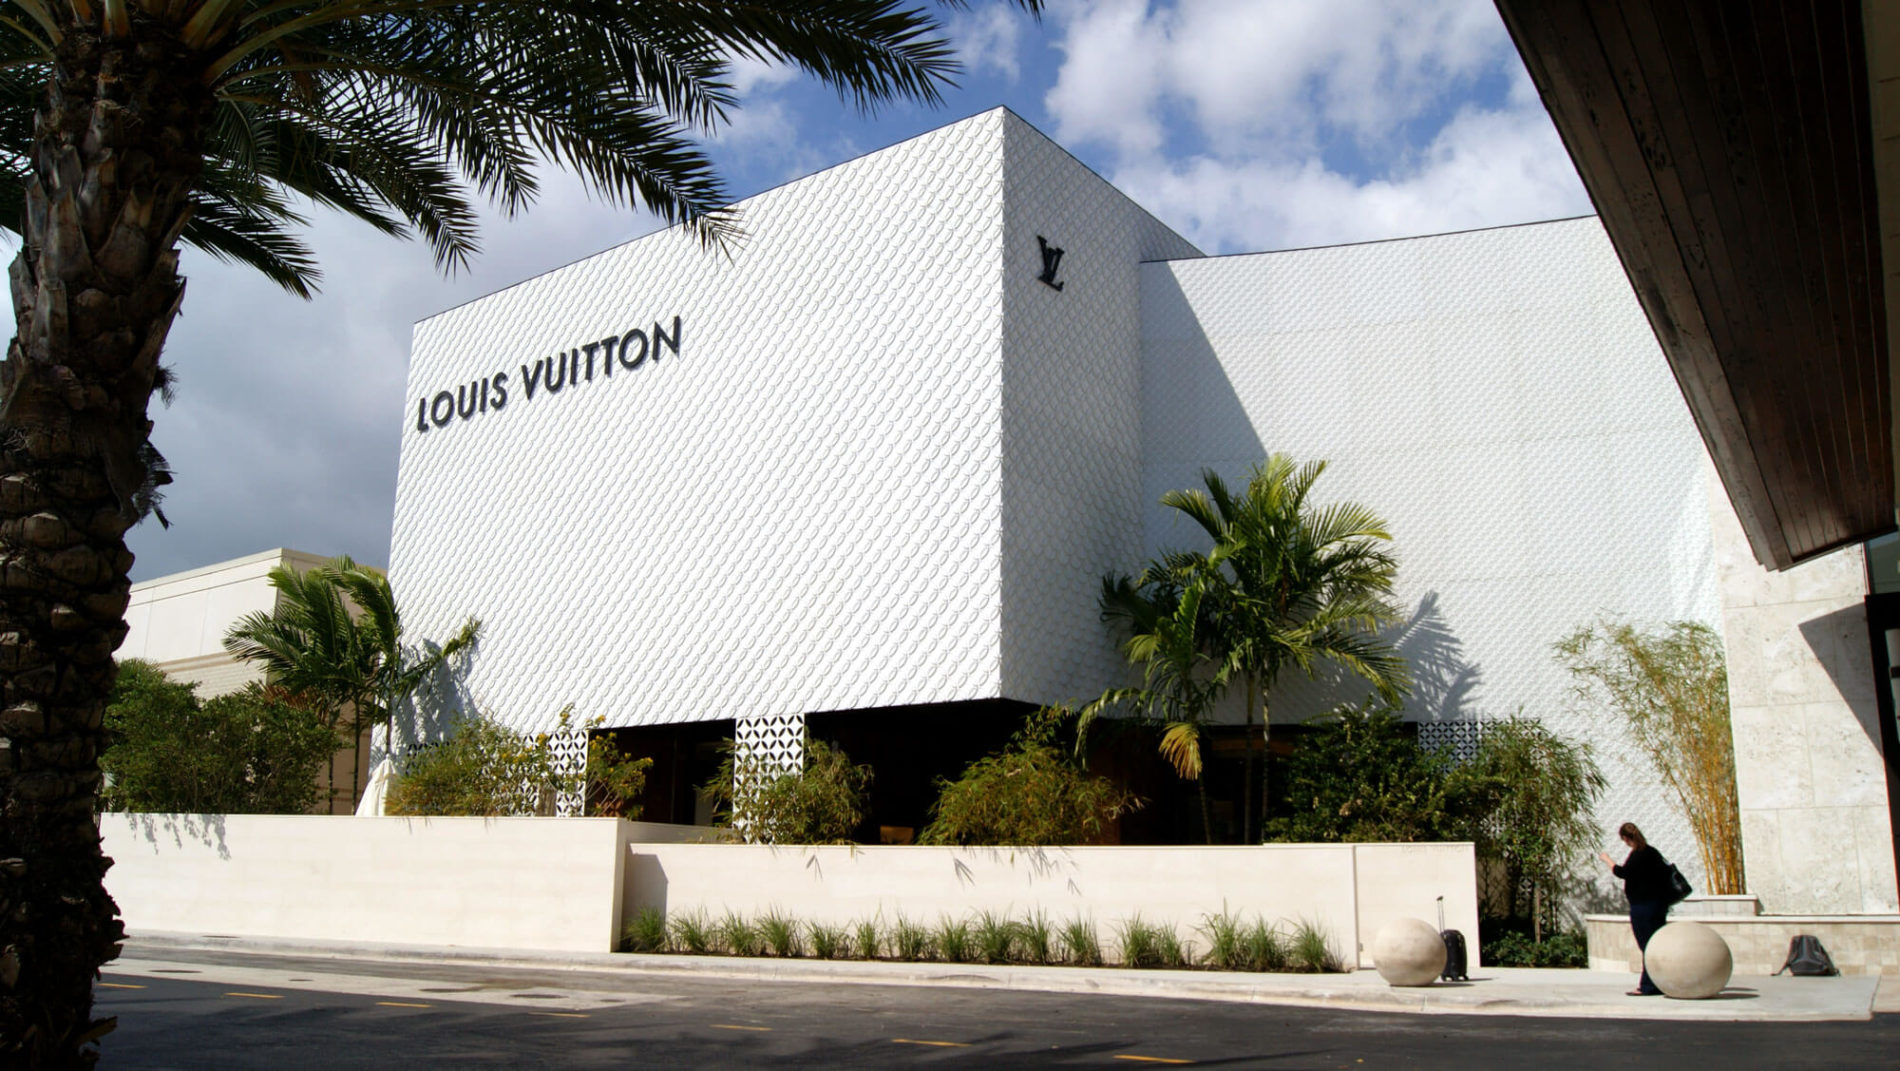 Louis Vuitton store in Miami, Florida